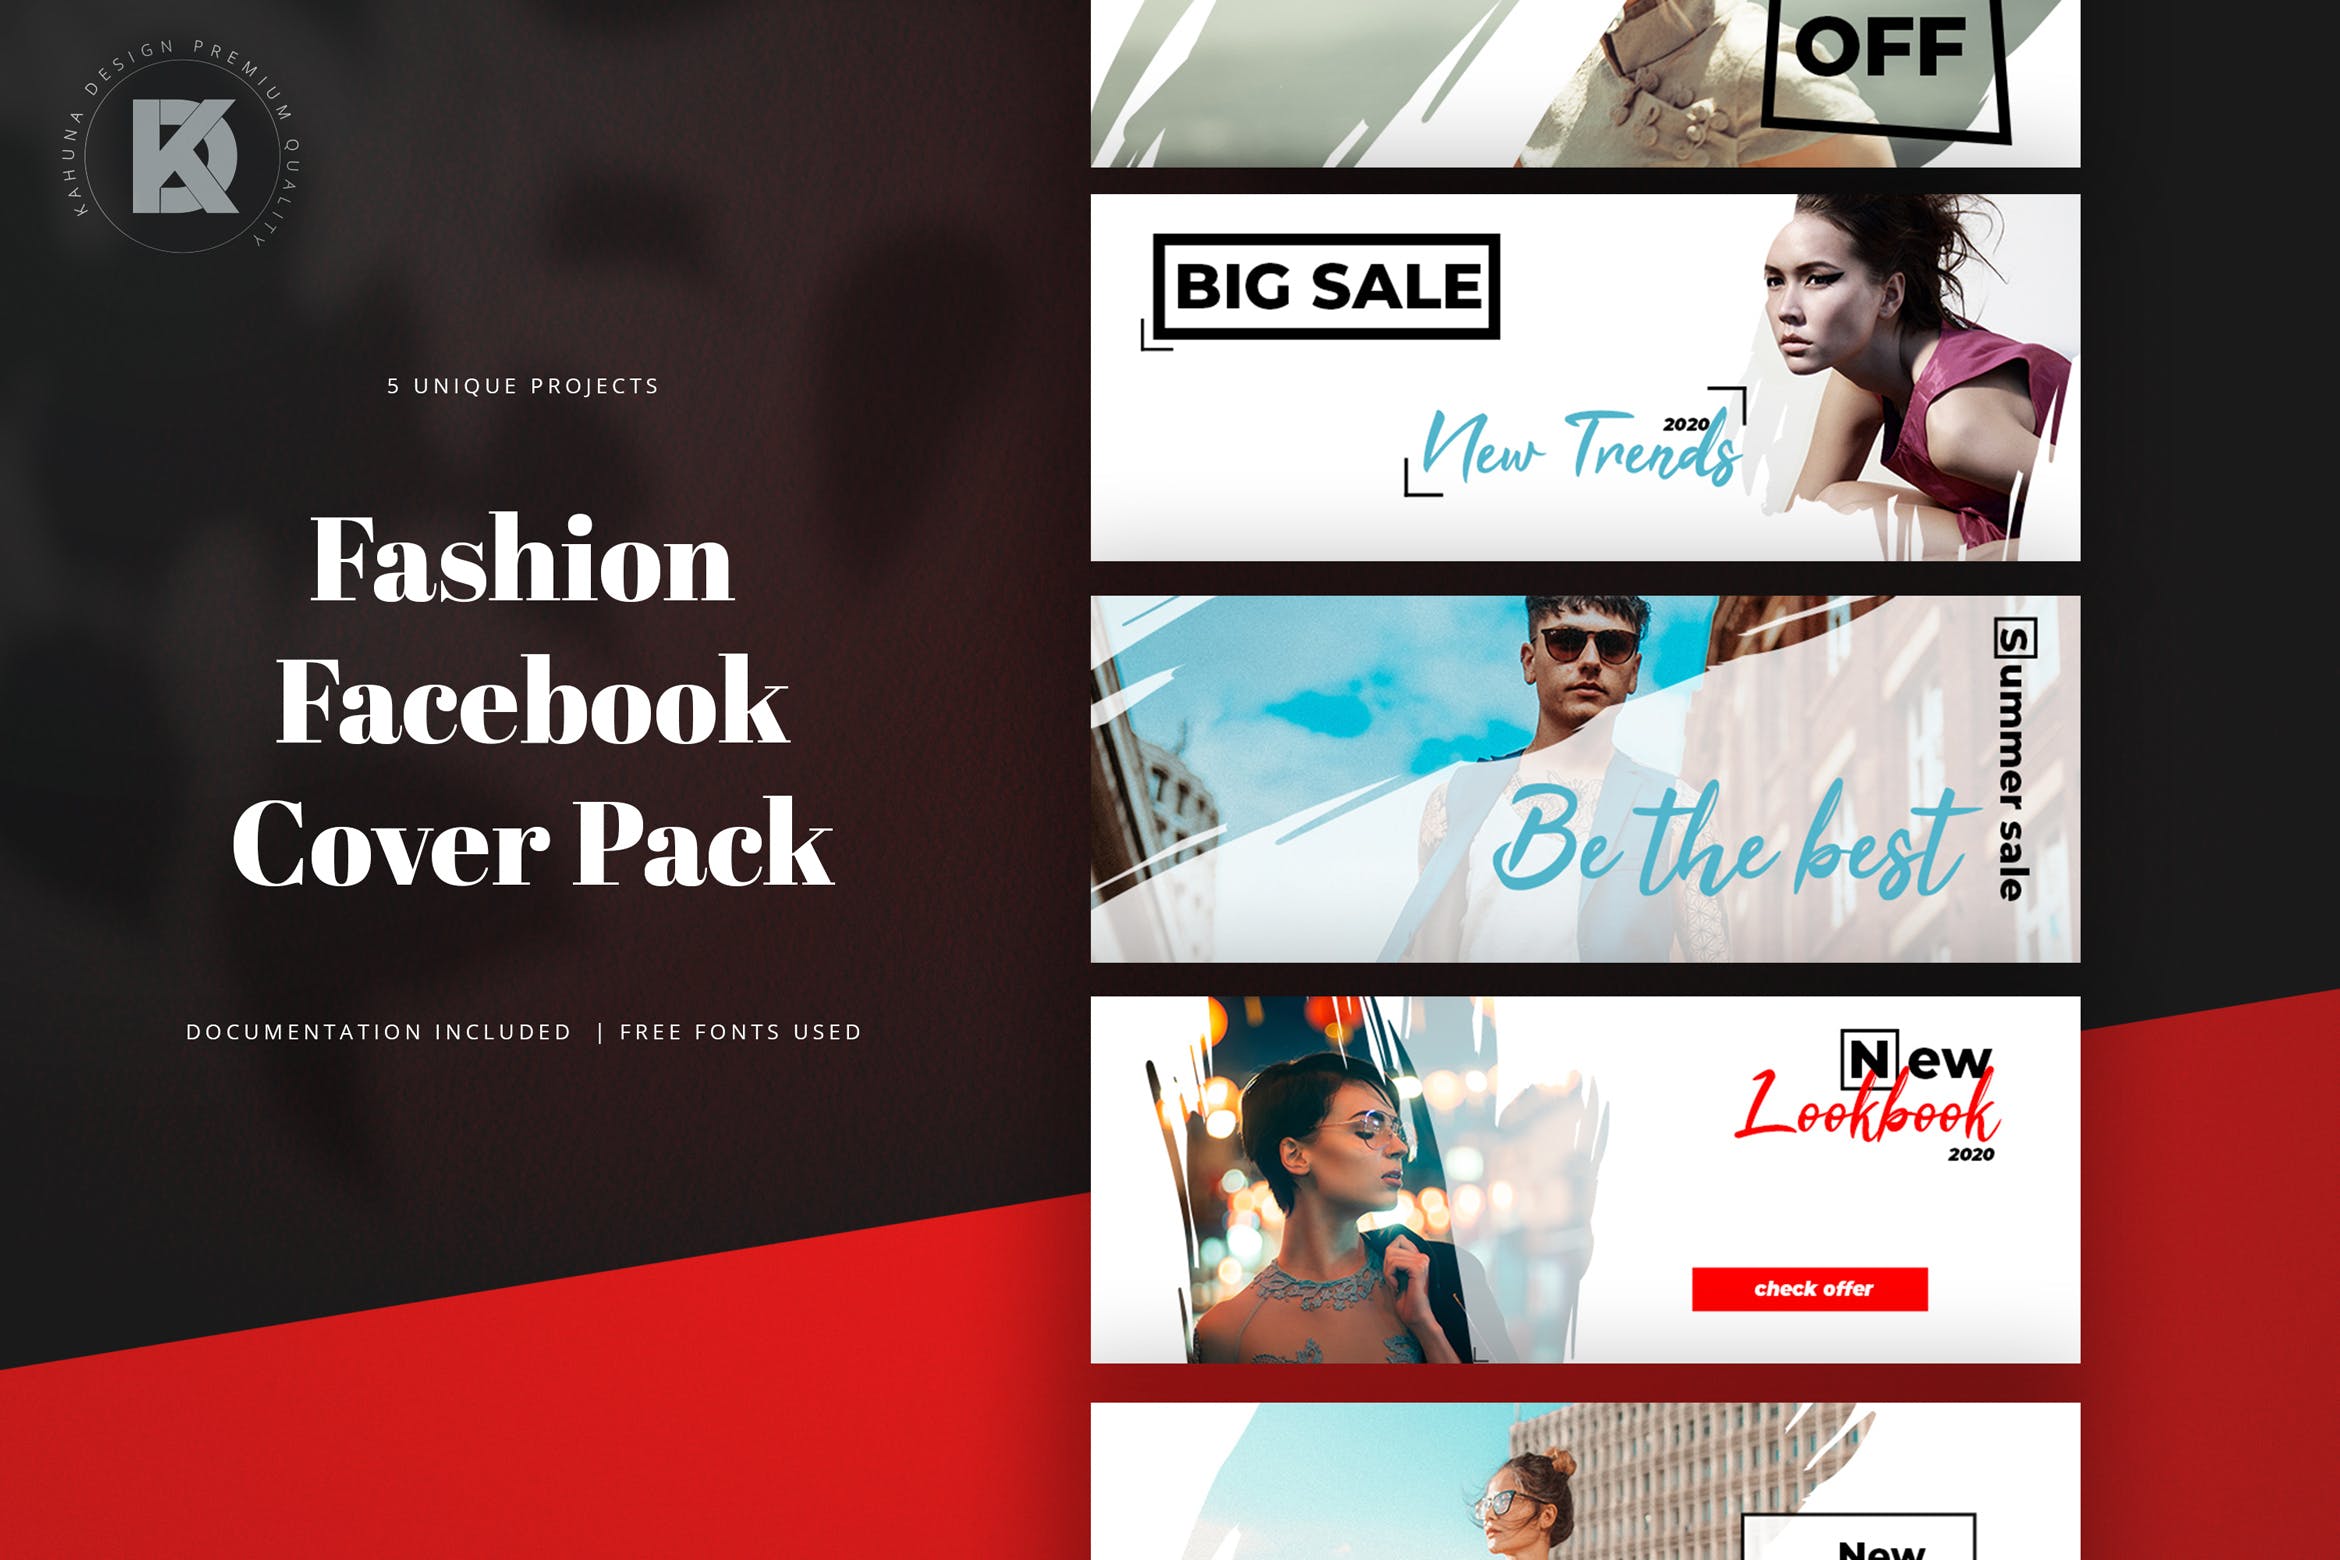 时尚品牌Facebook封面设计模板第一素材精选 Fashion Facebook Cover Pack插图